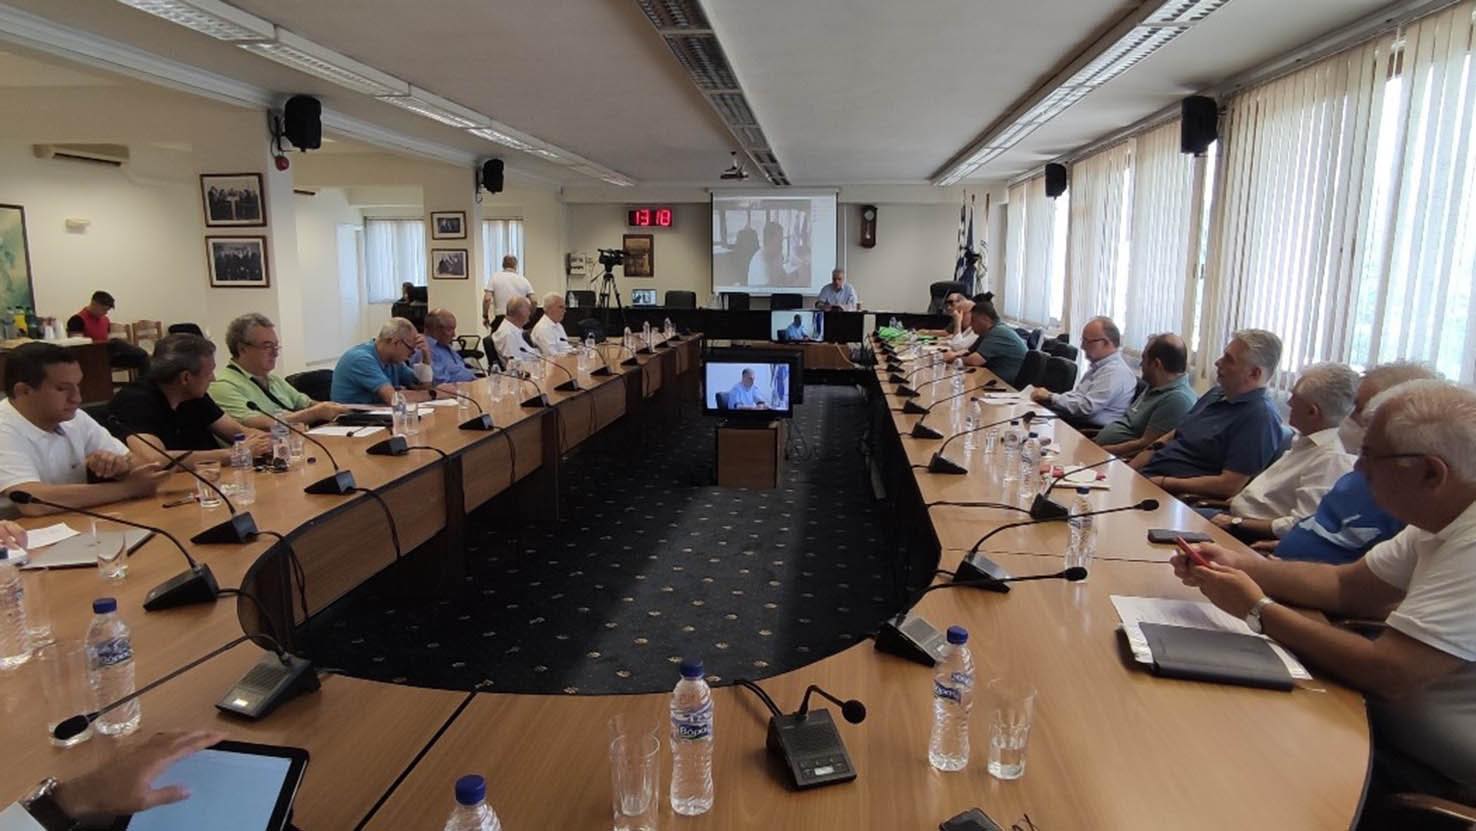 Πρώτη δια ζώσης – μετά τα μέτρα κατά της πανδημίας – συνεδρίαση των μελών του ΔΣ της Περιφερειακής Ένωσης Δήμων Αν. Μακεδονίας και Θράκης